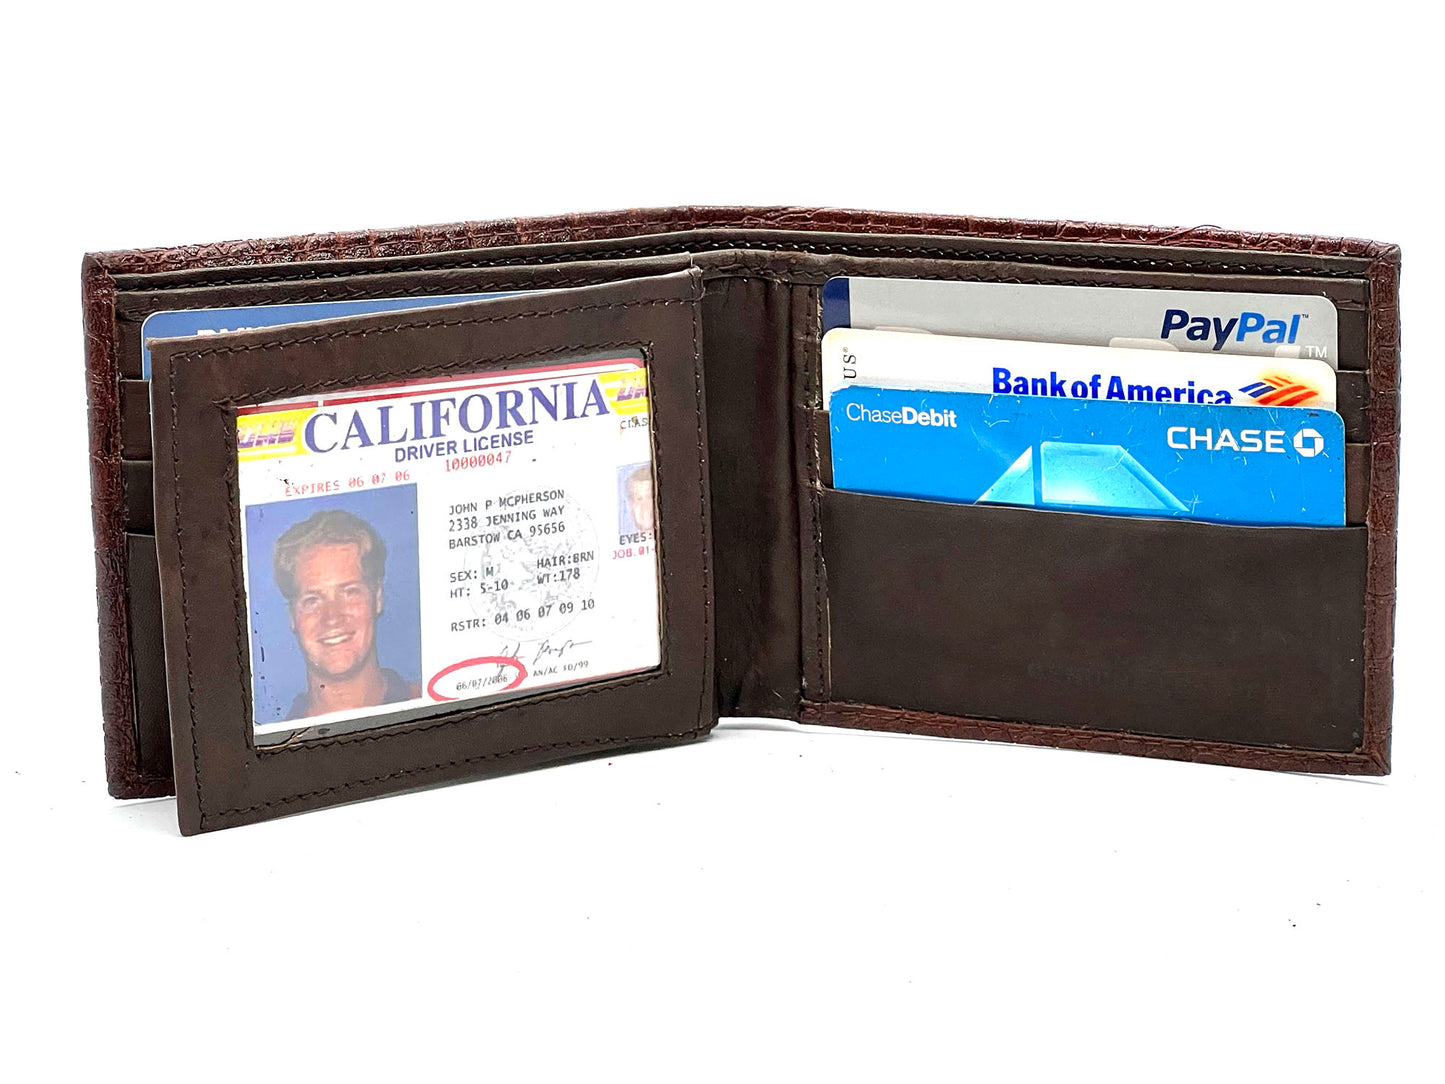 Genuine Leather Croc Print Men's Bifold Wallet Credit Card Holder